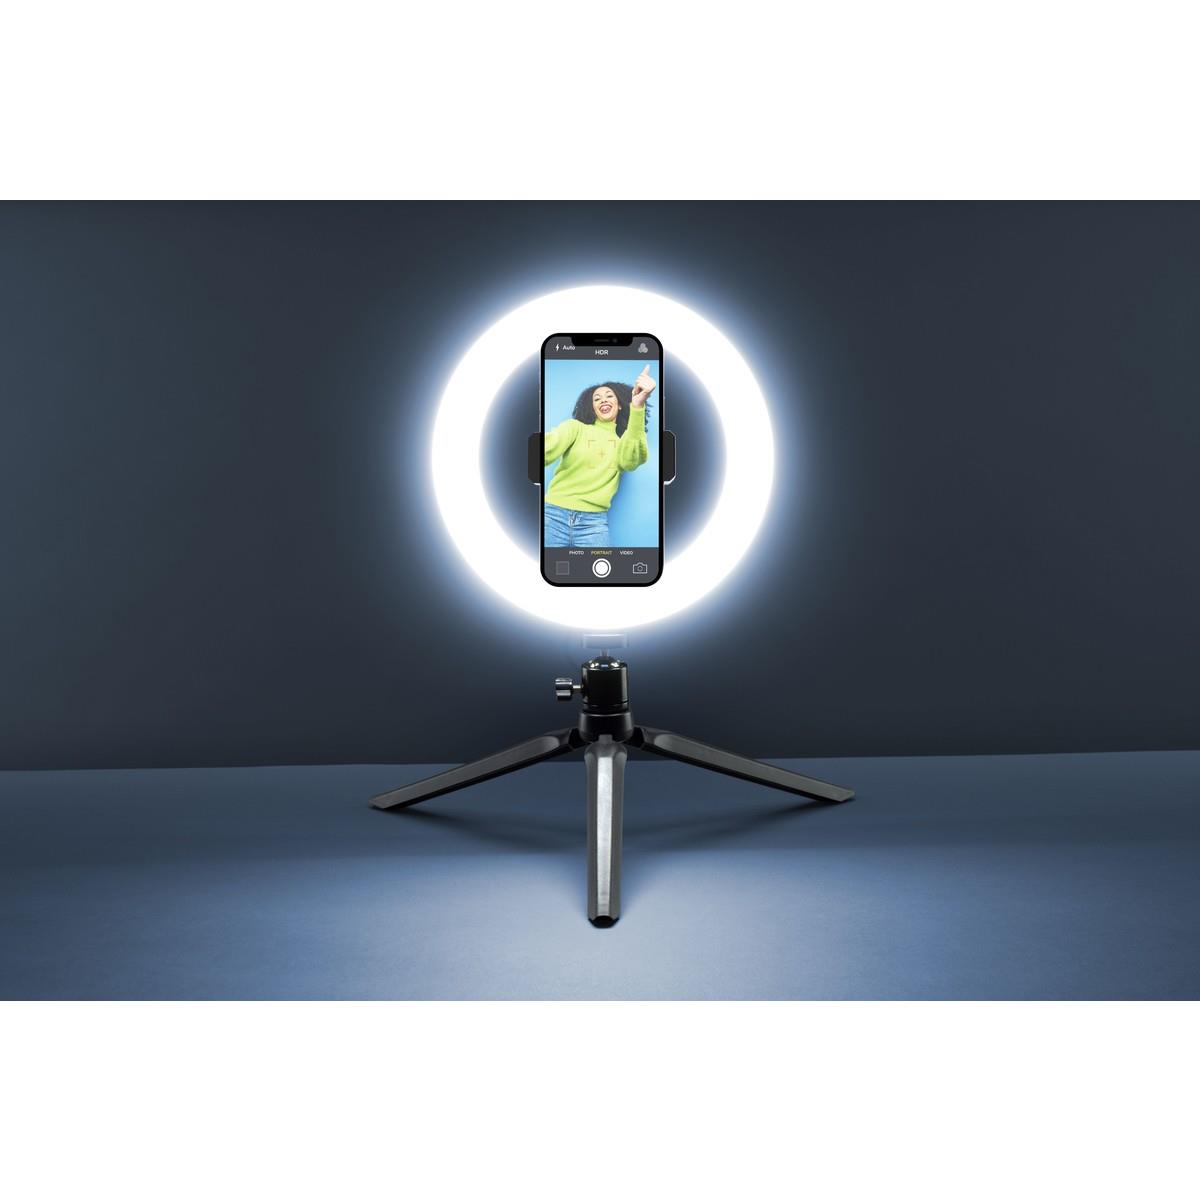 Tischstativ SELFIE RING mit LED Lichtring für Smartphones